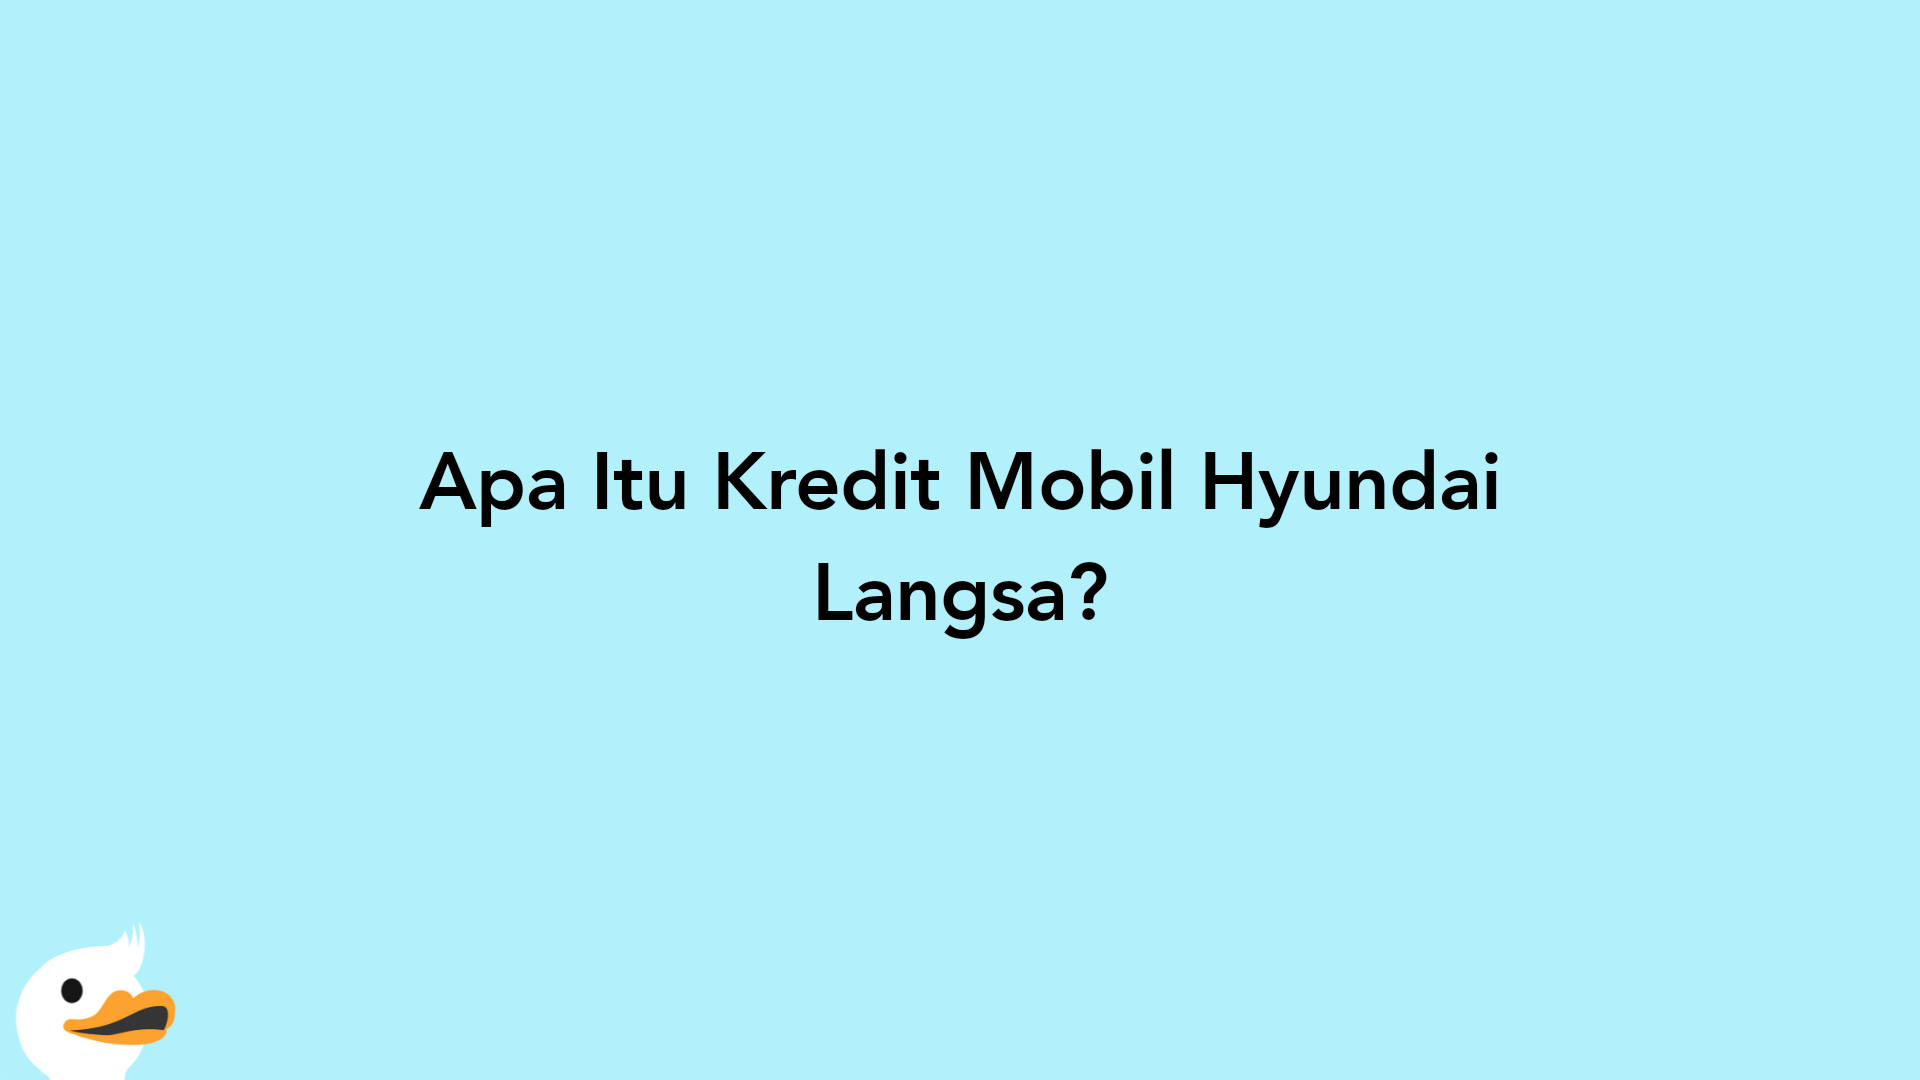 Apa Itu Kredit Mobil Hyundai Langsa?